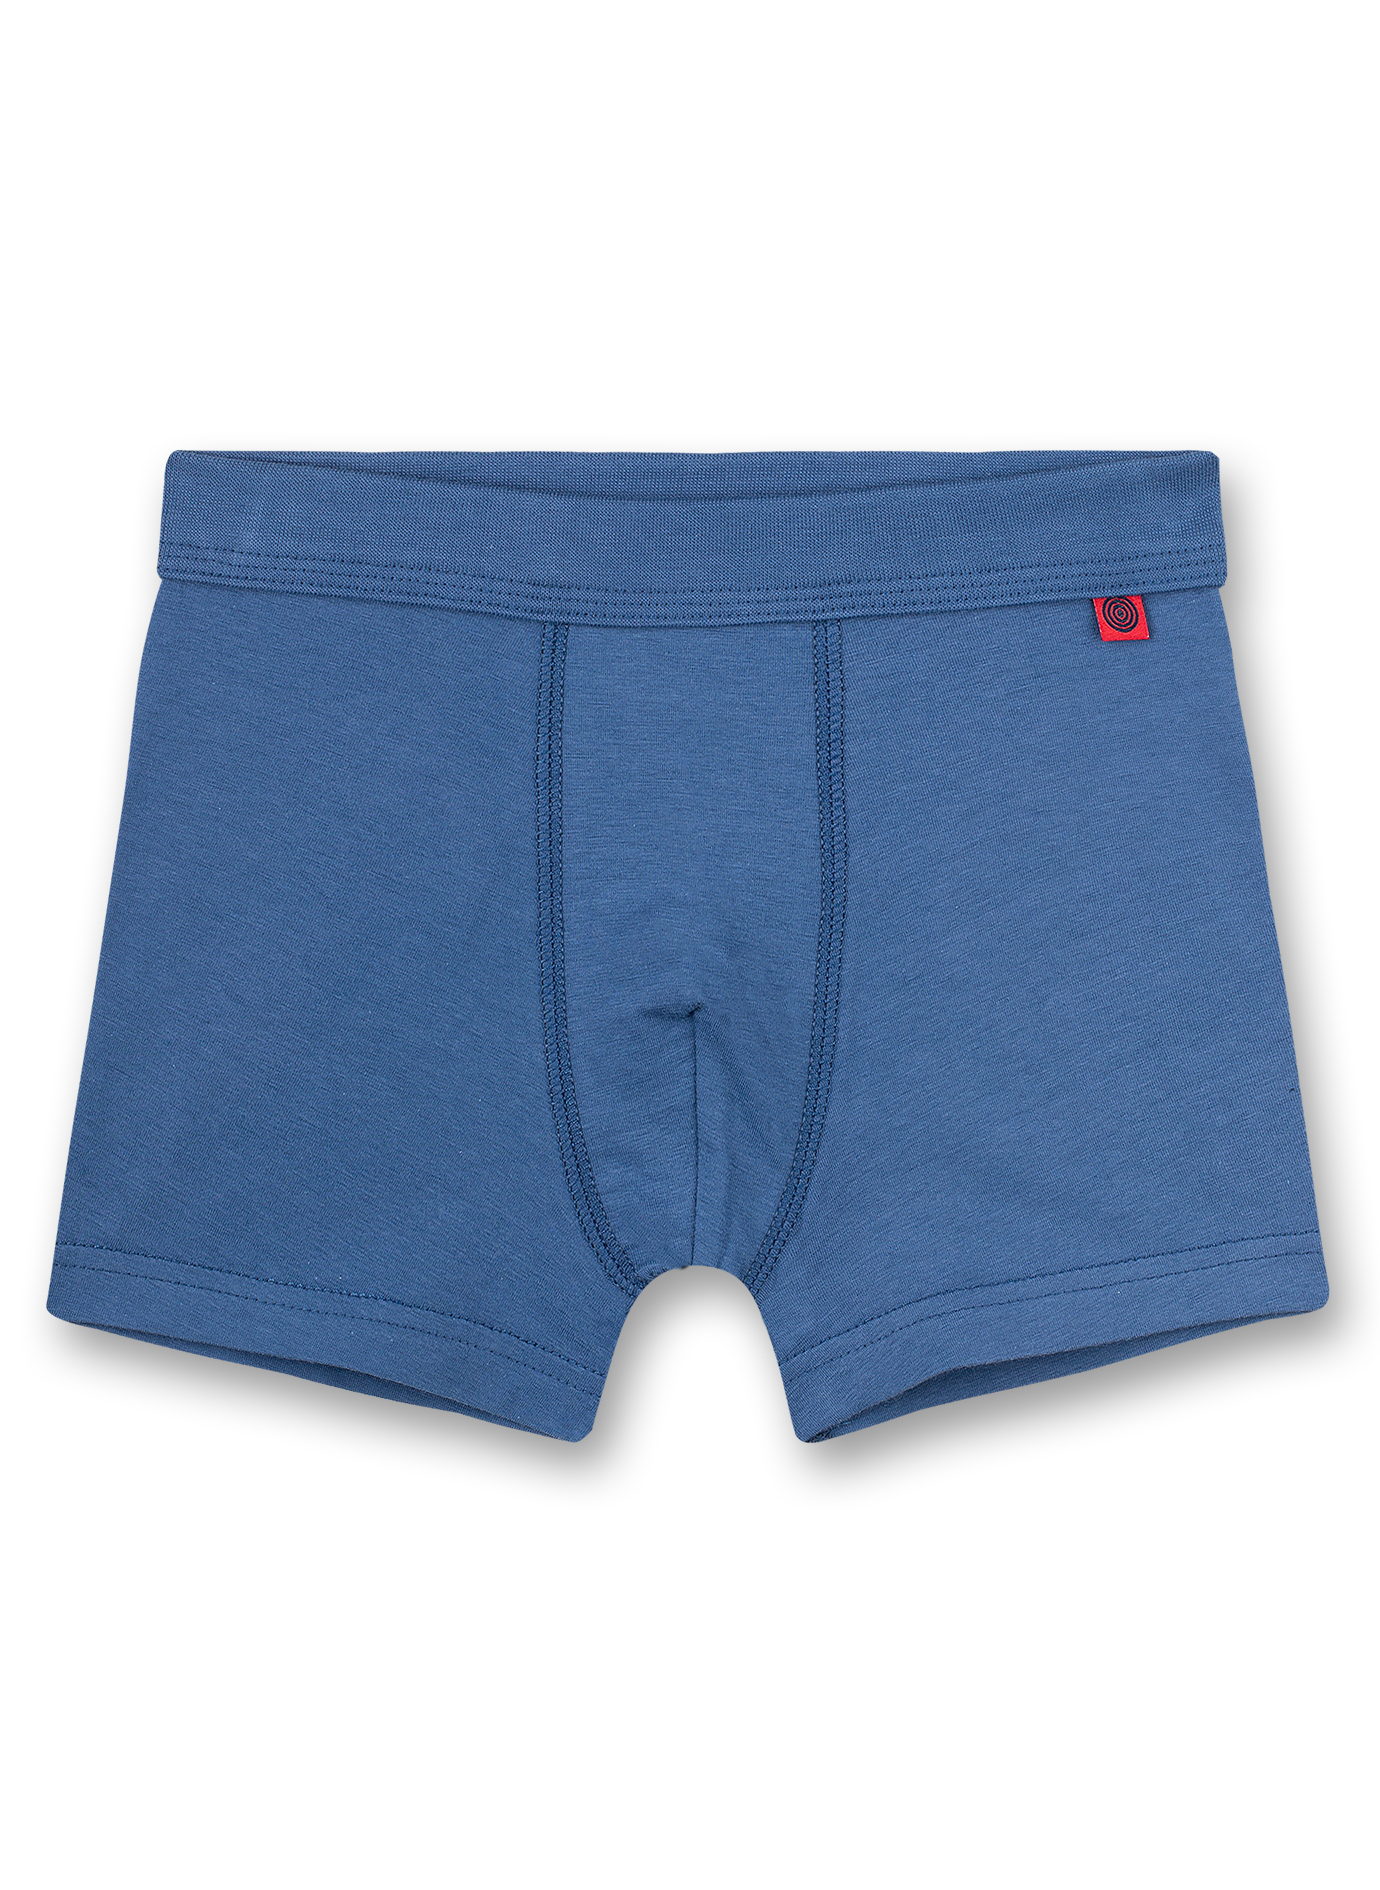 Jungen-Shorts (Doppelpack) Blau und Blau Ringel